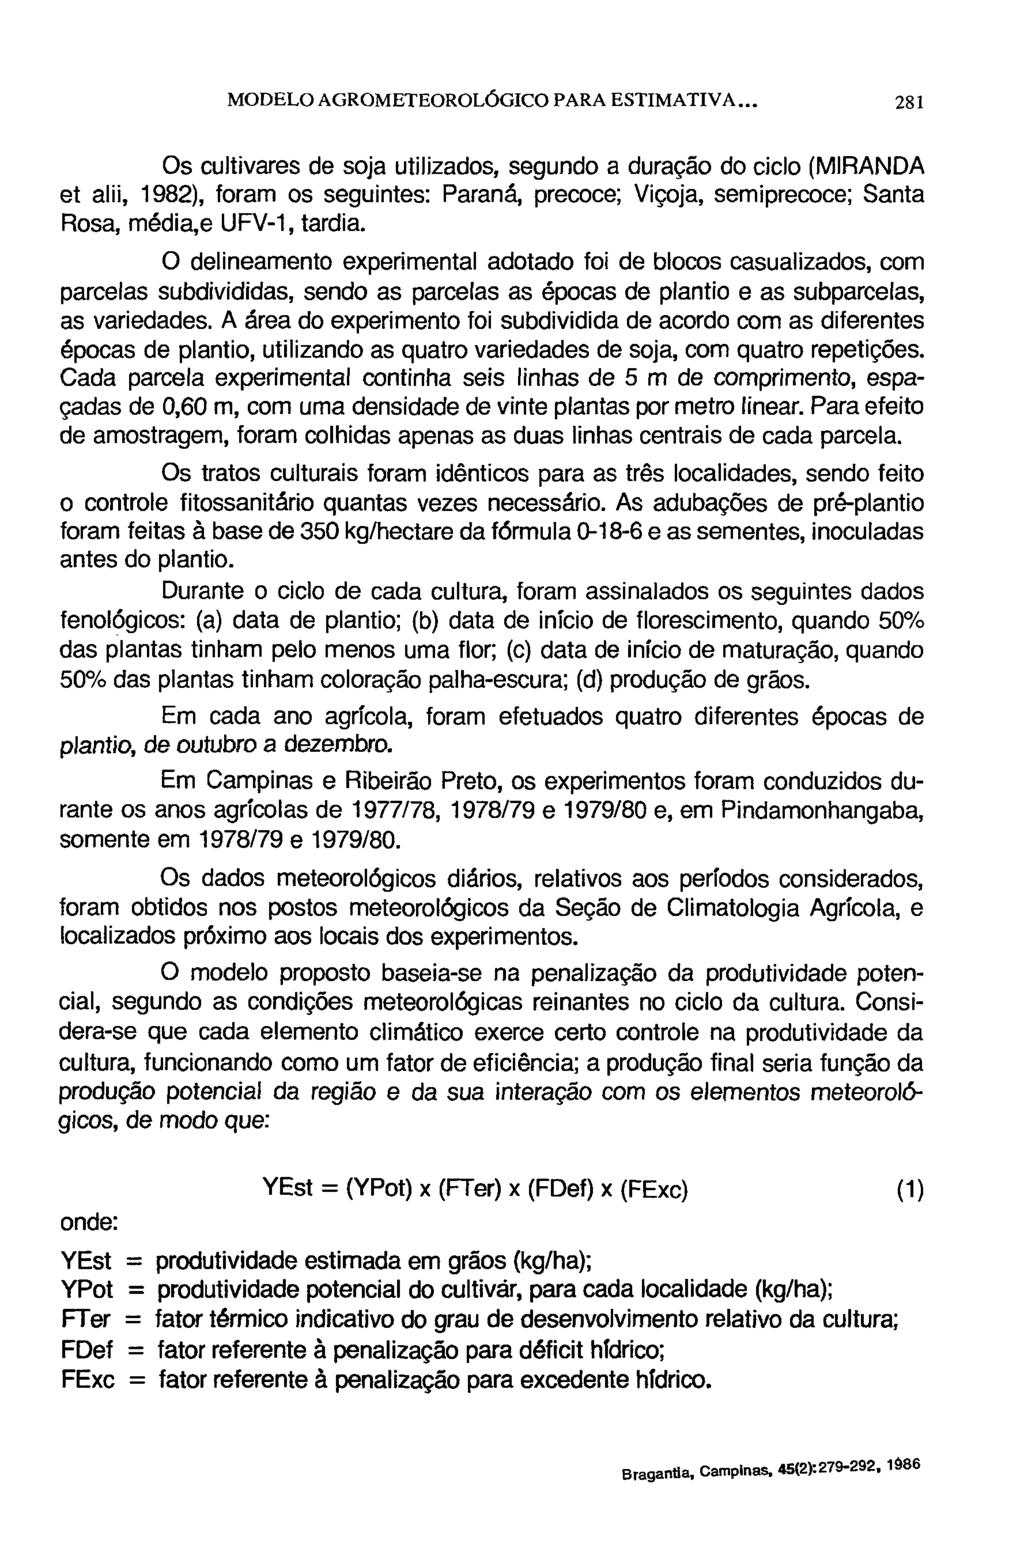 Os cultivares de soja utilizados, segundo a duração do ciclo (MIRANDA et alii, 1982), foram os seguintes: Paraná, precoce; Viçoja, semiprecoce; Santa Rosa, média,e UFV-1, tardia.